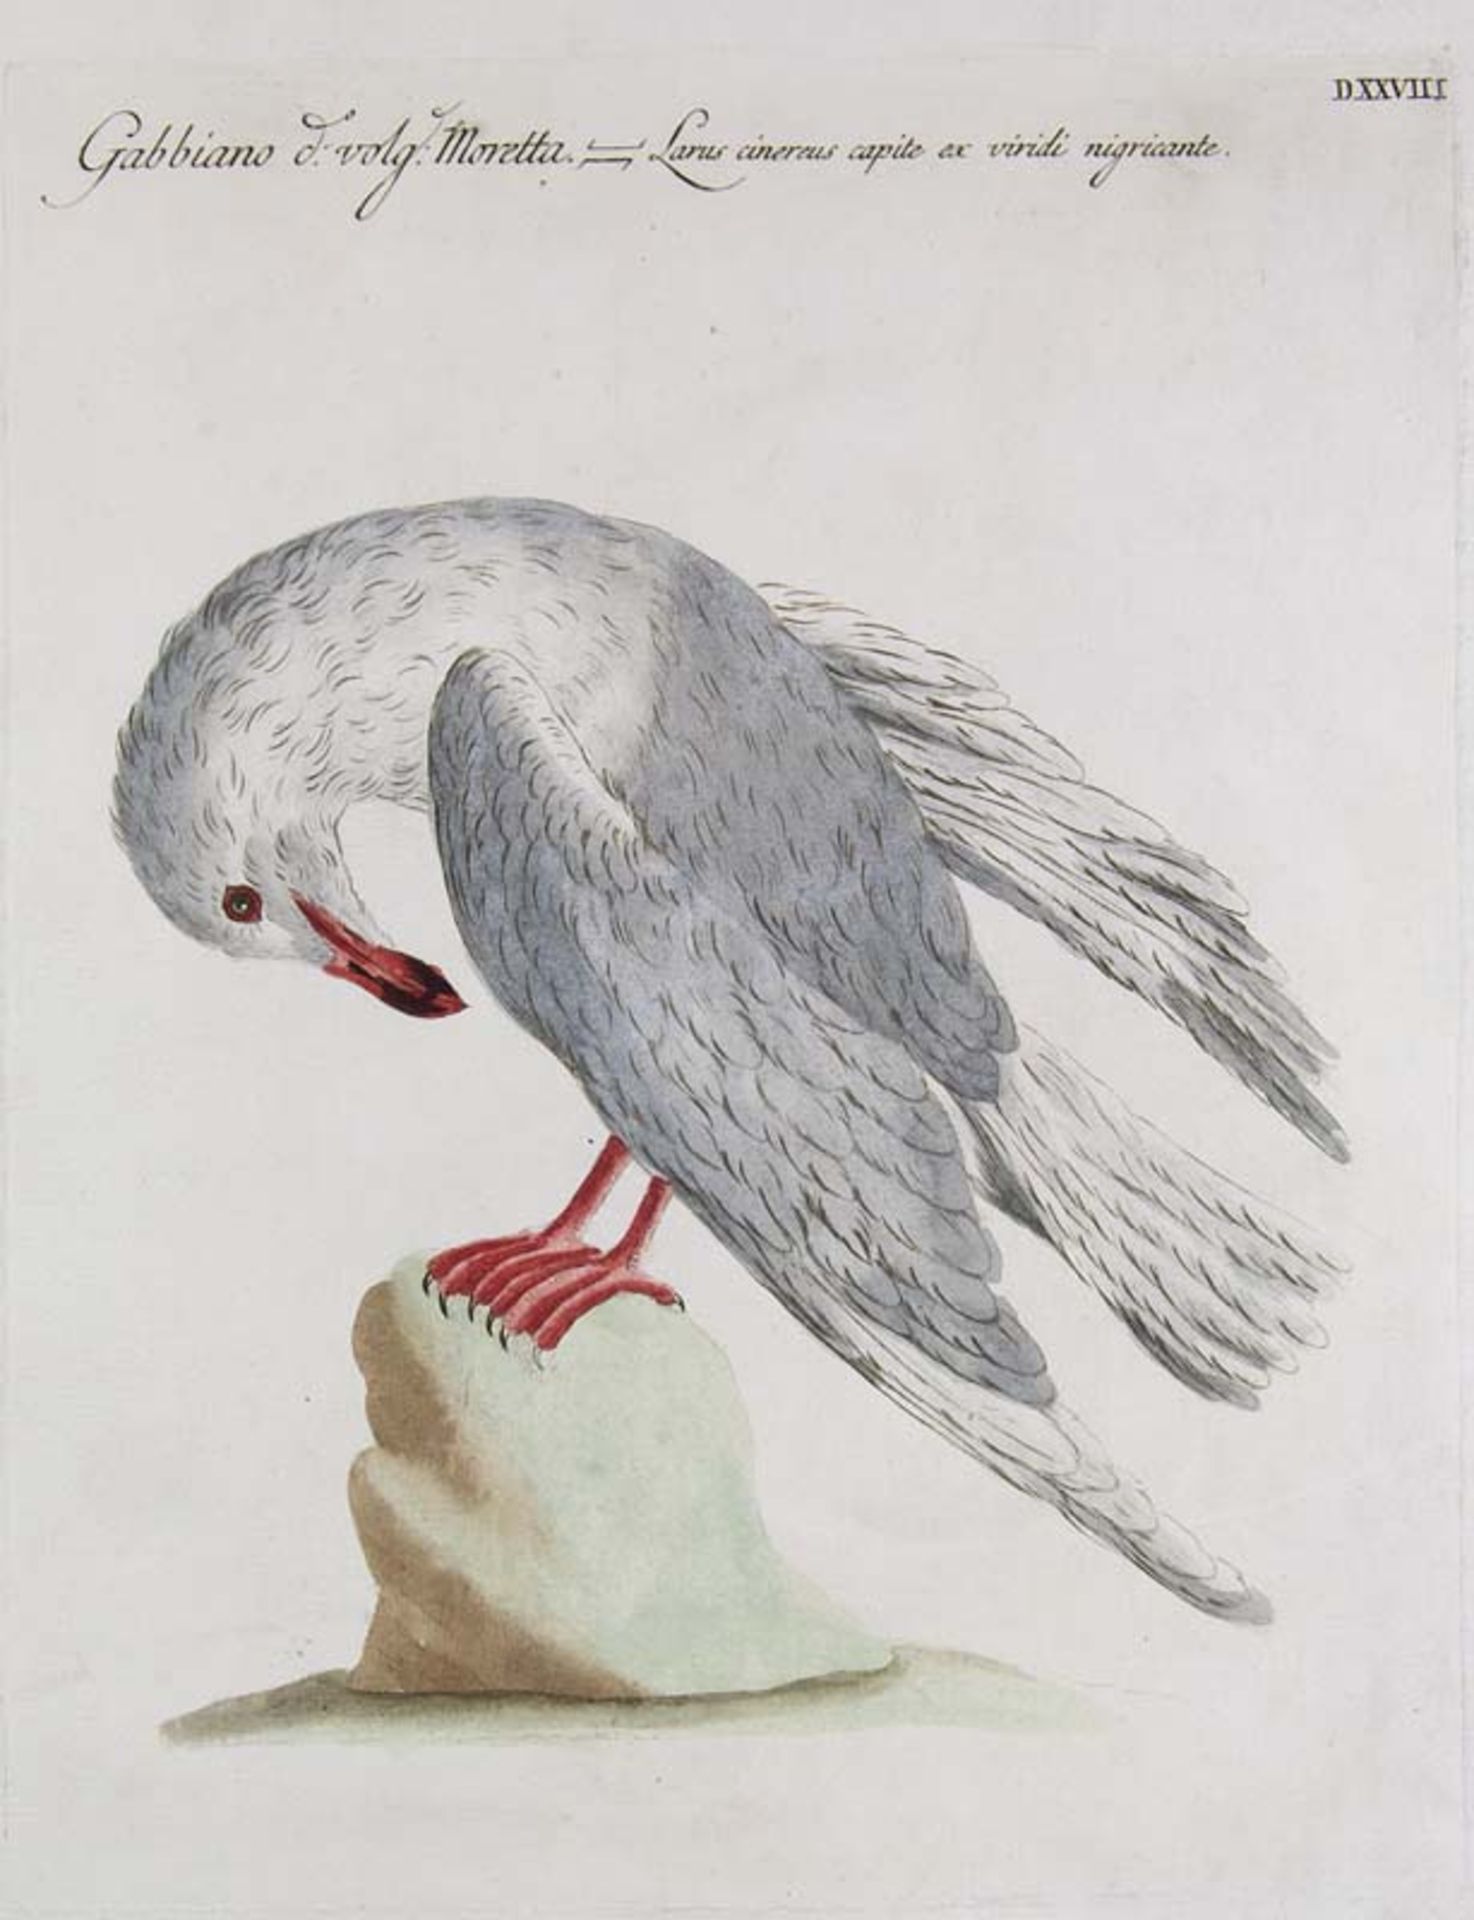 Ornithologie - - Manetti, Saverio. 24 Tafeln aus Ornithologia Methodice Digesta Atque Iconibus